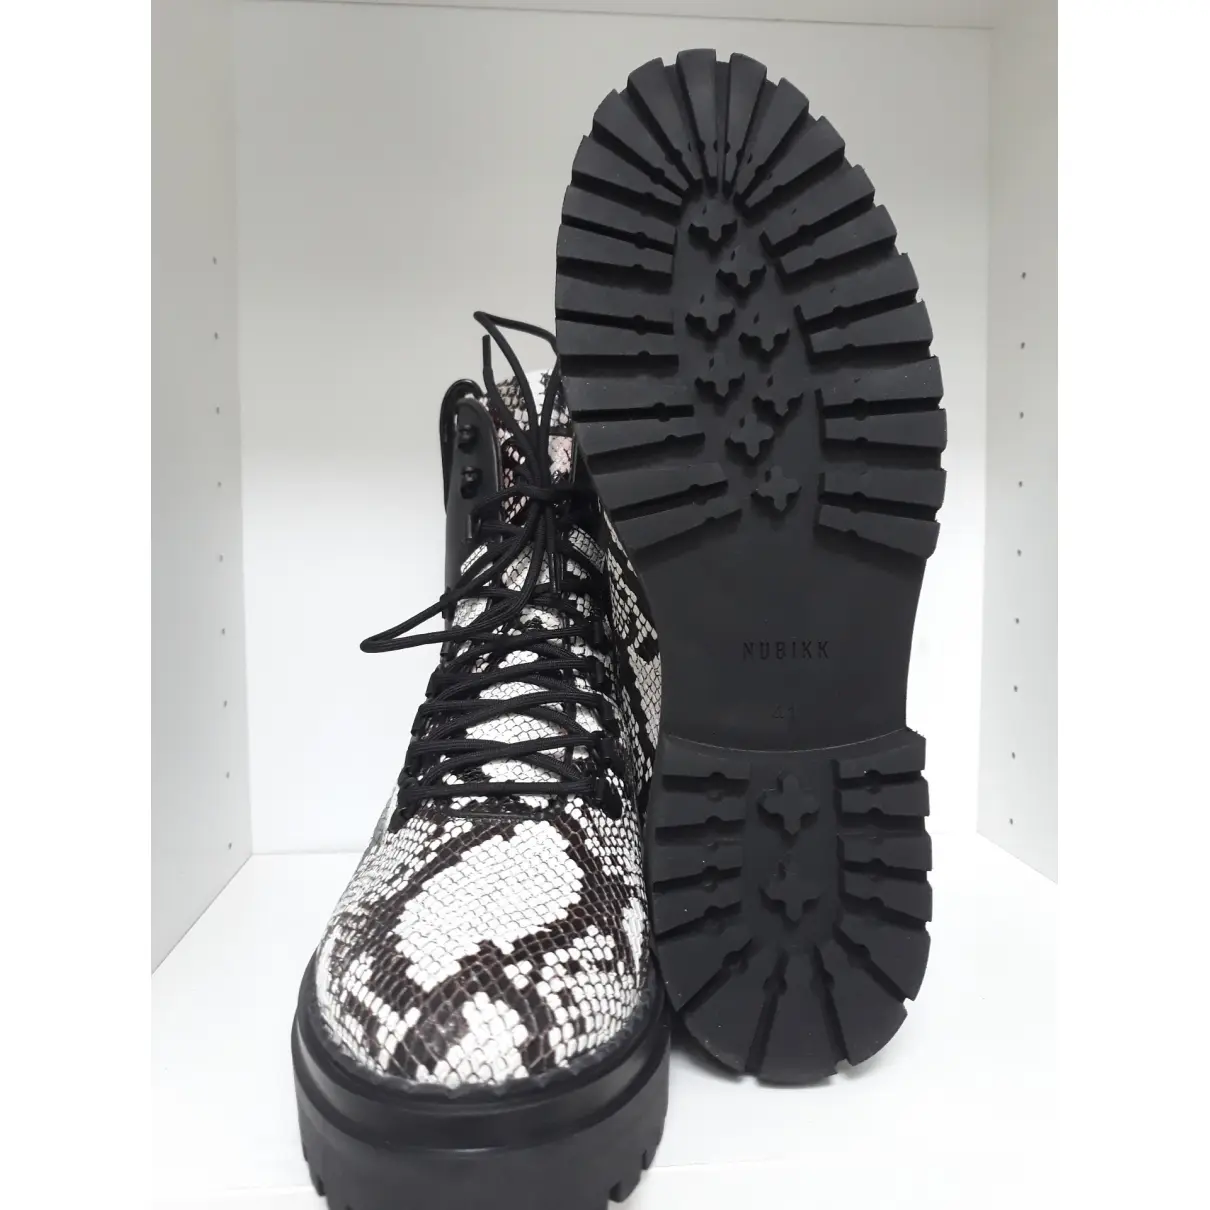 Leather boots Nubikk